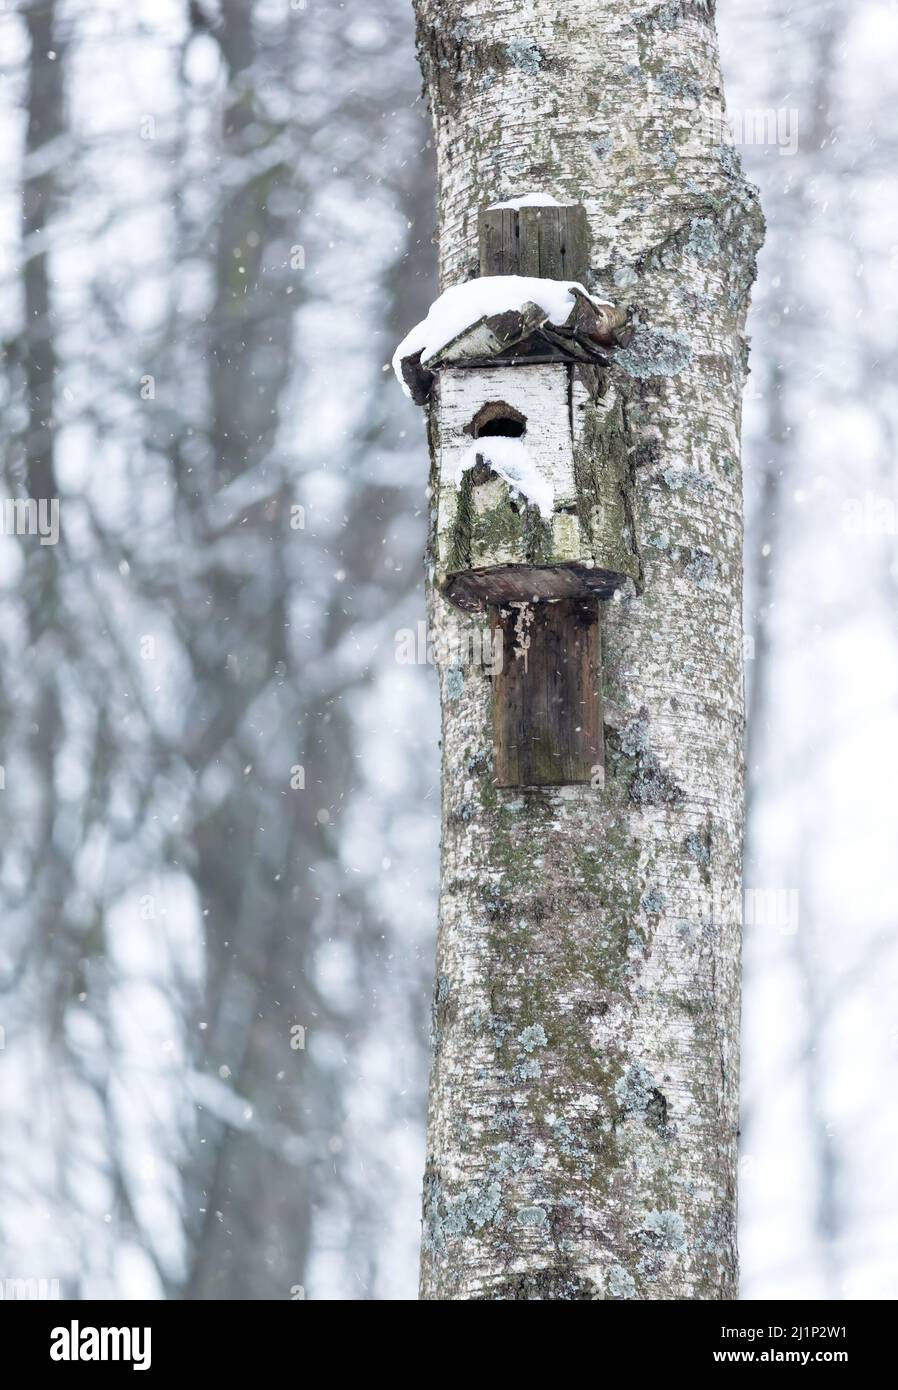 Gros plan d'une boîte de nidification d'oiseau en bois fixée à un arbre. Banque D'Images